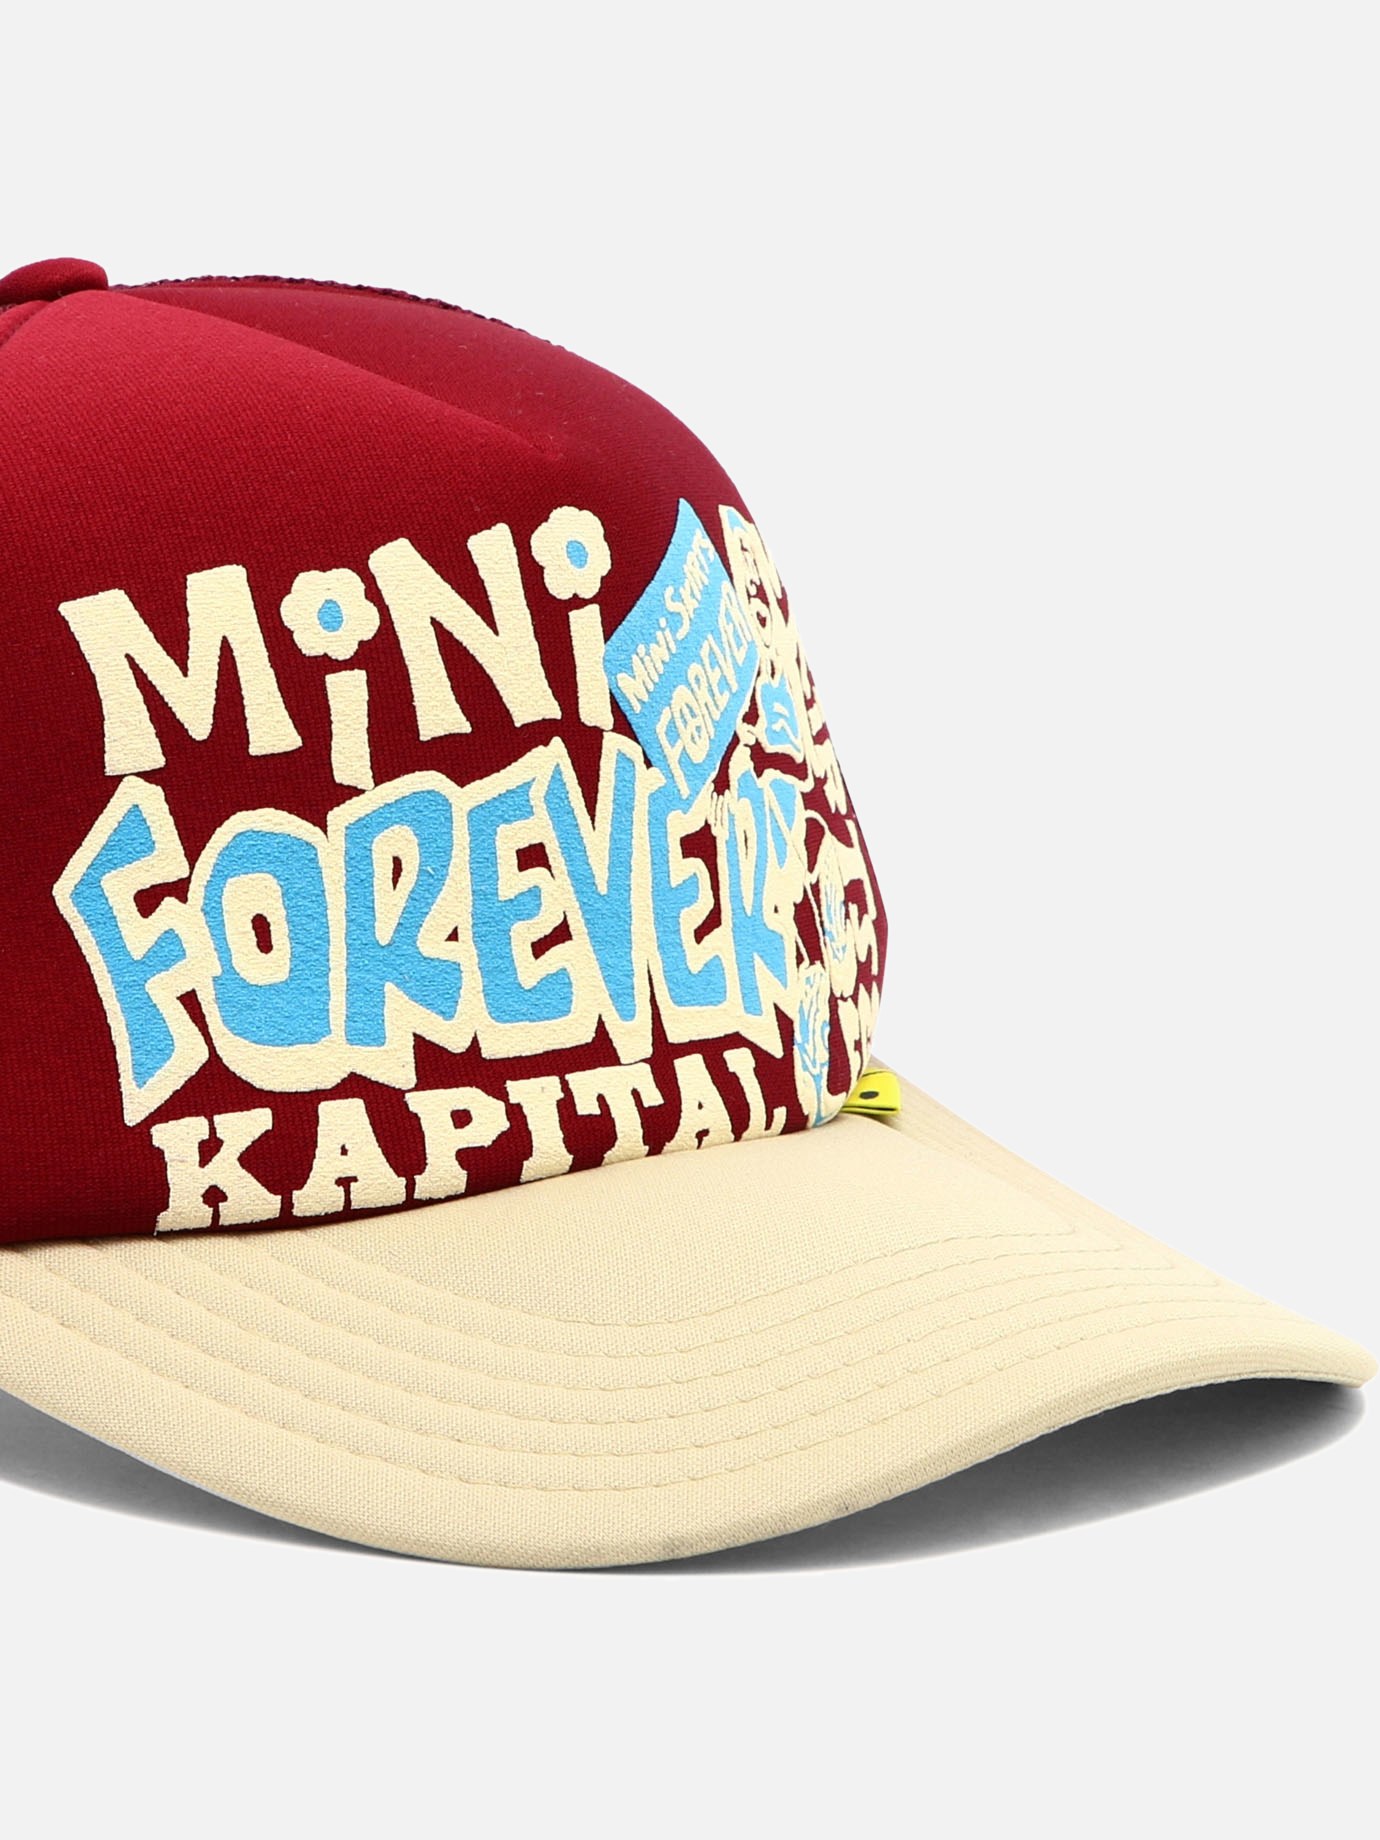  Mini Skirts Forever  trucker hat by Kapital